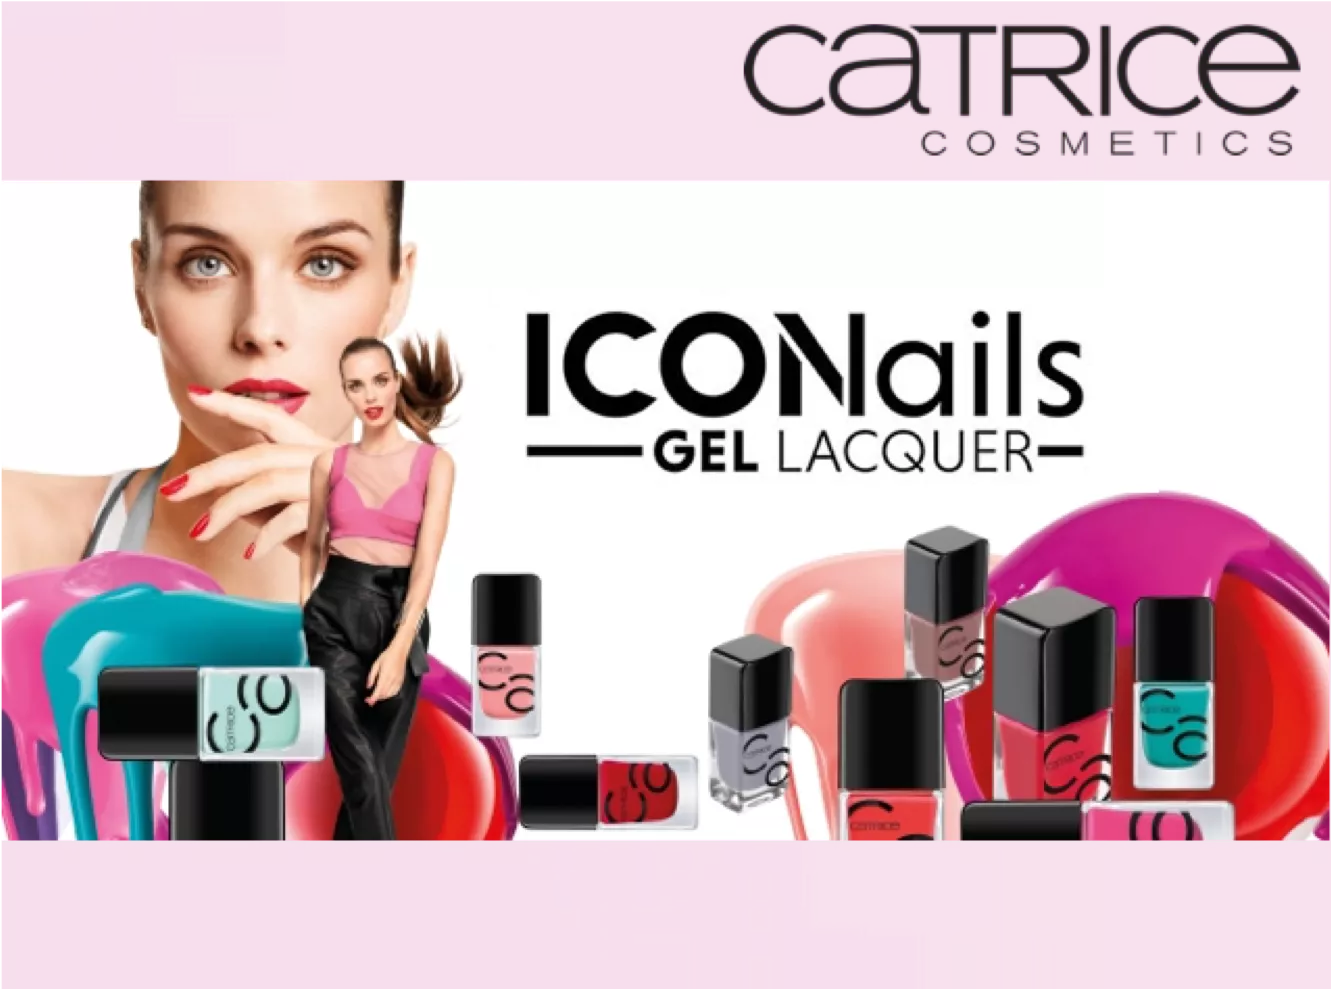 Iconails Catrice Cosmetics